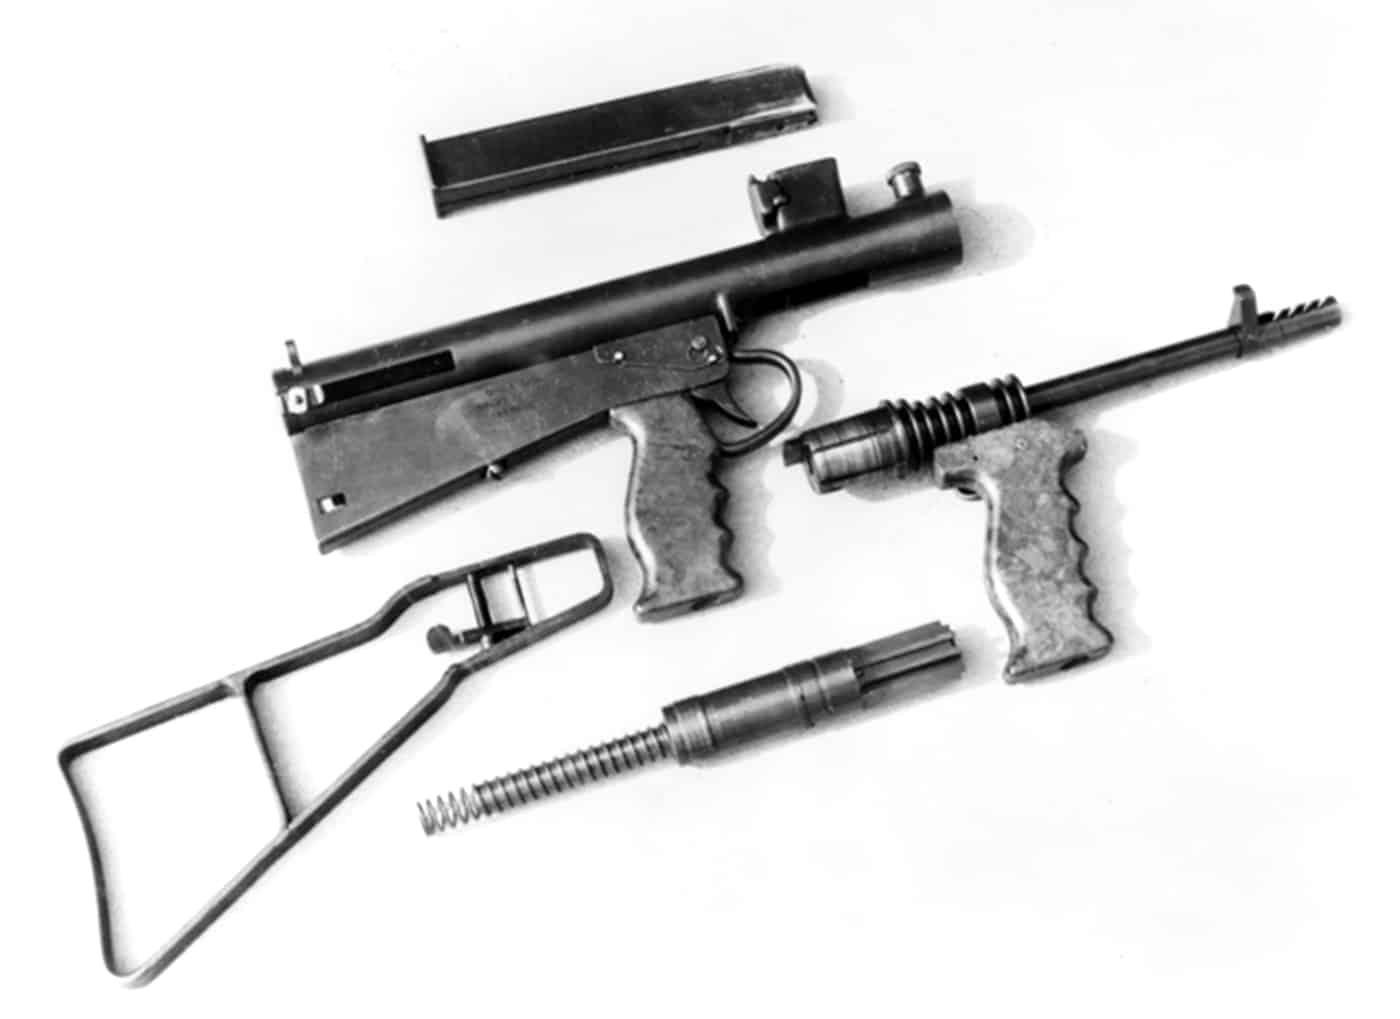 disassembled owen gun